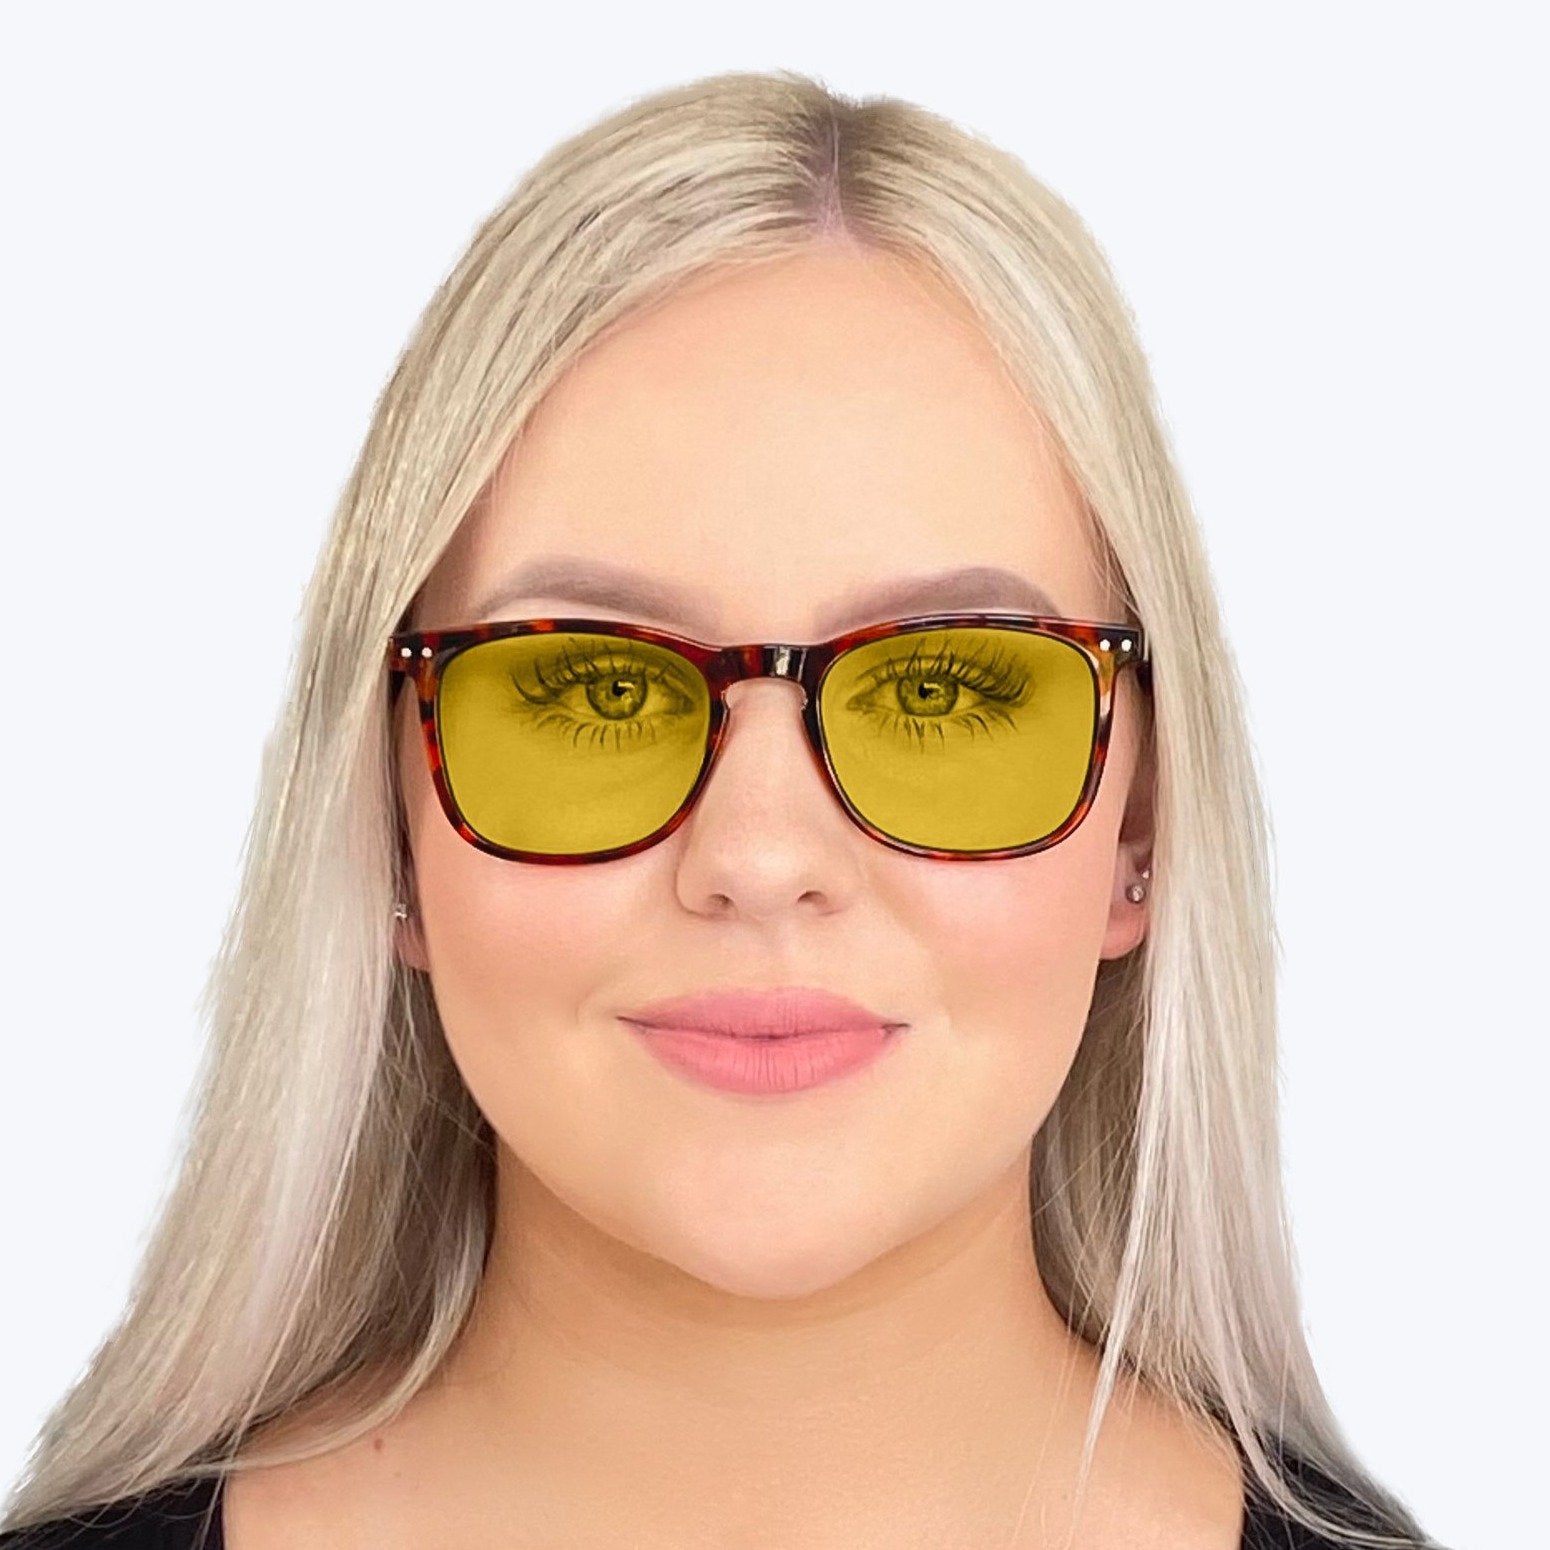 DayMax Taylor Glasses - Tortoise Blue Light Filter Glasses - Yellow Lens BlockBlueLight 